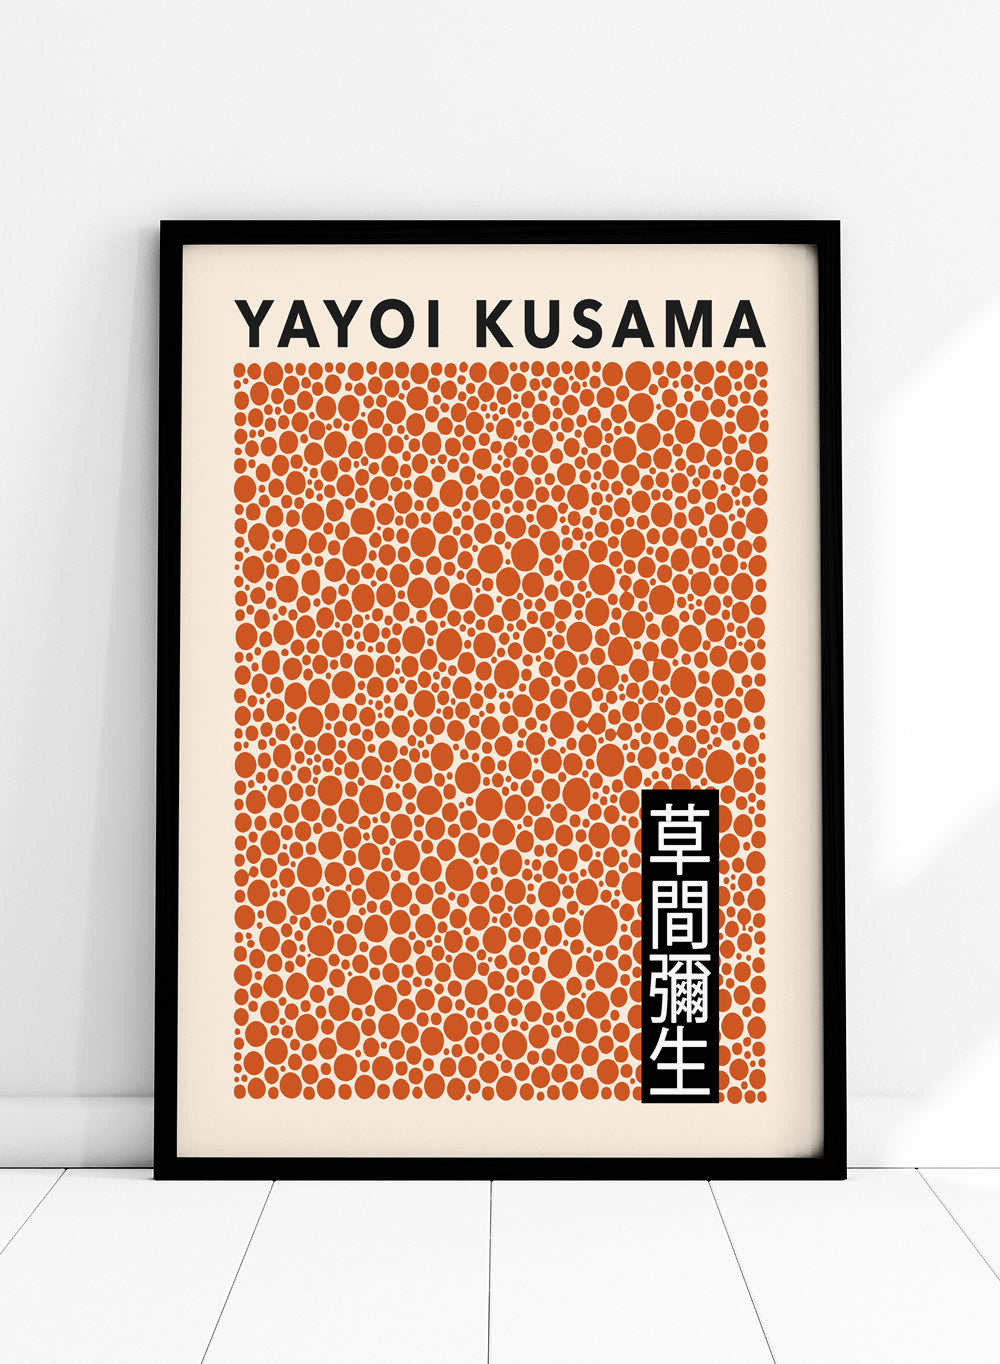 Polka Dots Inspired by Yayoi Kusama Art Print